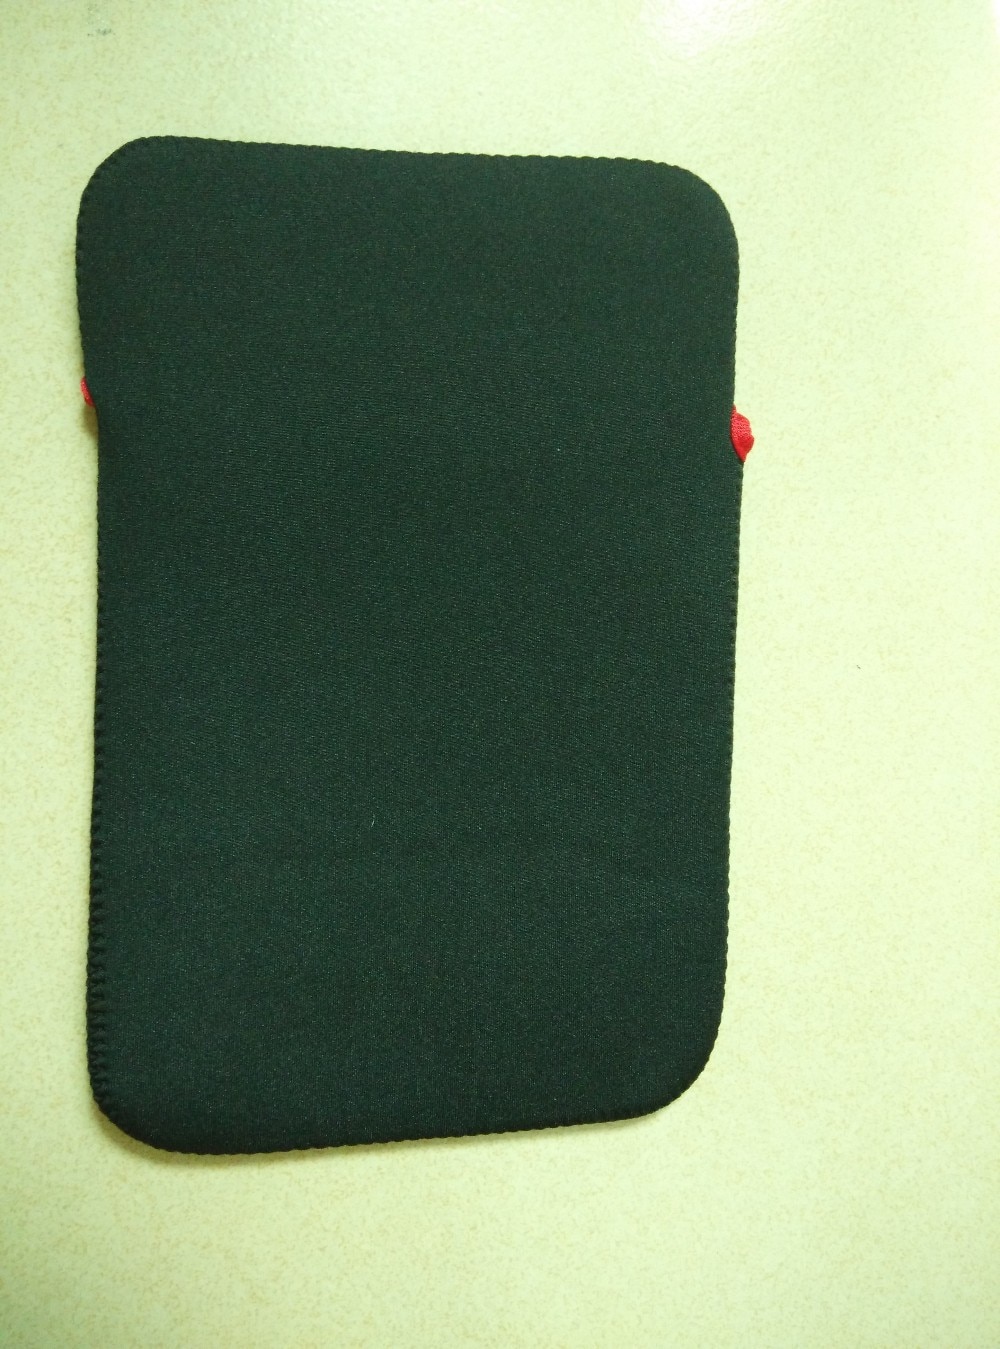 Anfilite 7 "inch soft bag sleeve case gebruikt voor 7 inch tablet en gps navigatie